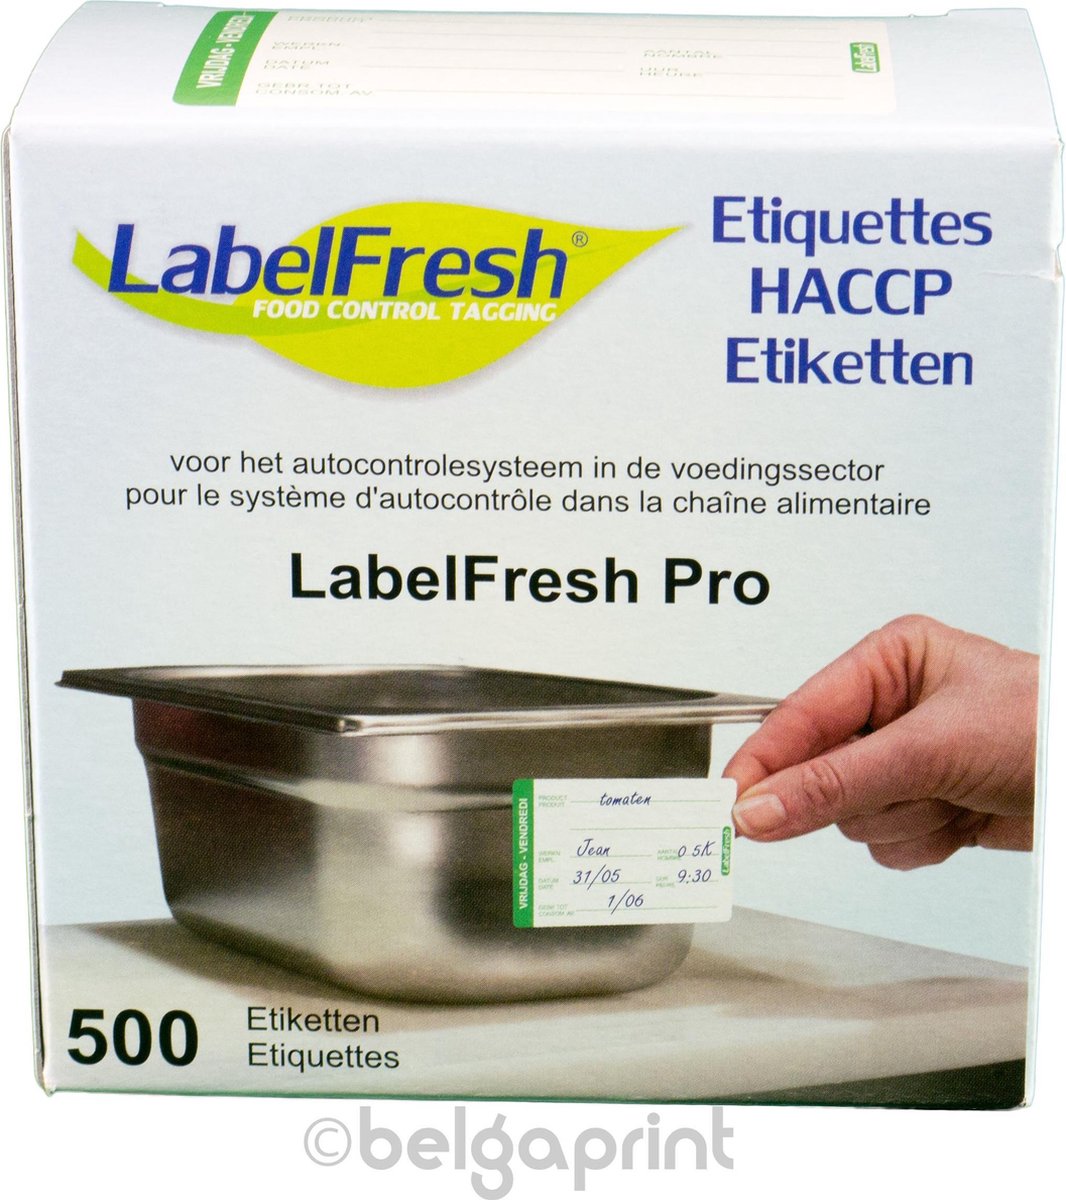 500 LabelFresh Pro - 70x45 mm - vrijdag-vendredi - HACCP etiketten / stickers